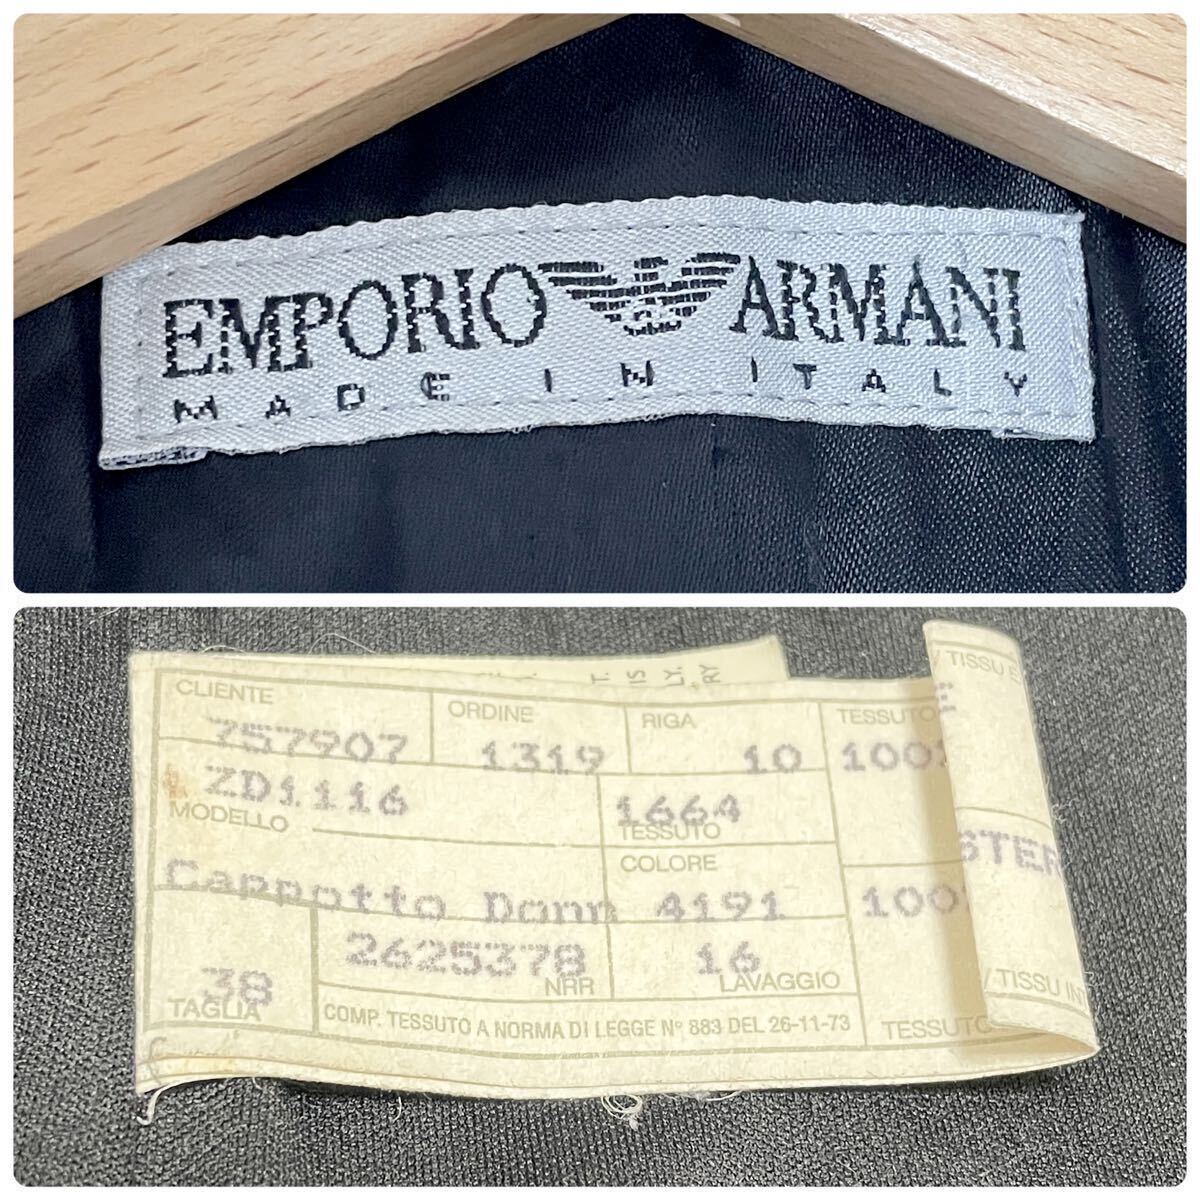 [ Emporio Armani ] EMPORIO ARMANI Пальто Честерфилд длинное пальто шерсть Италия производства темно-серый 